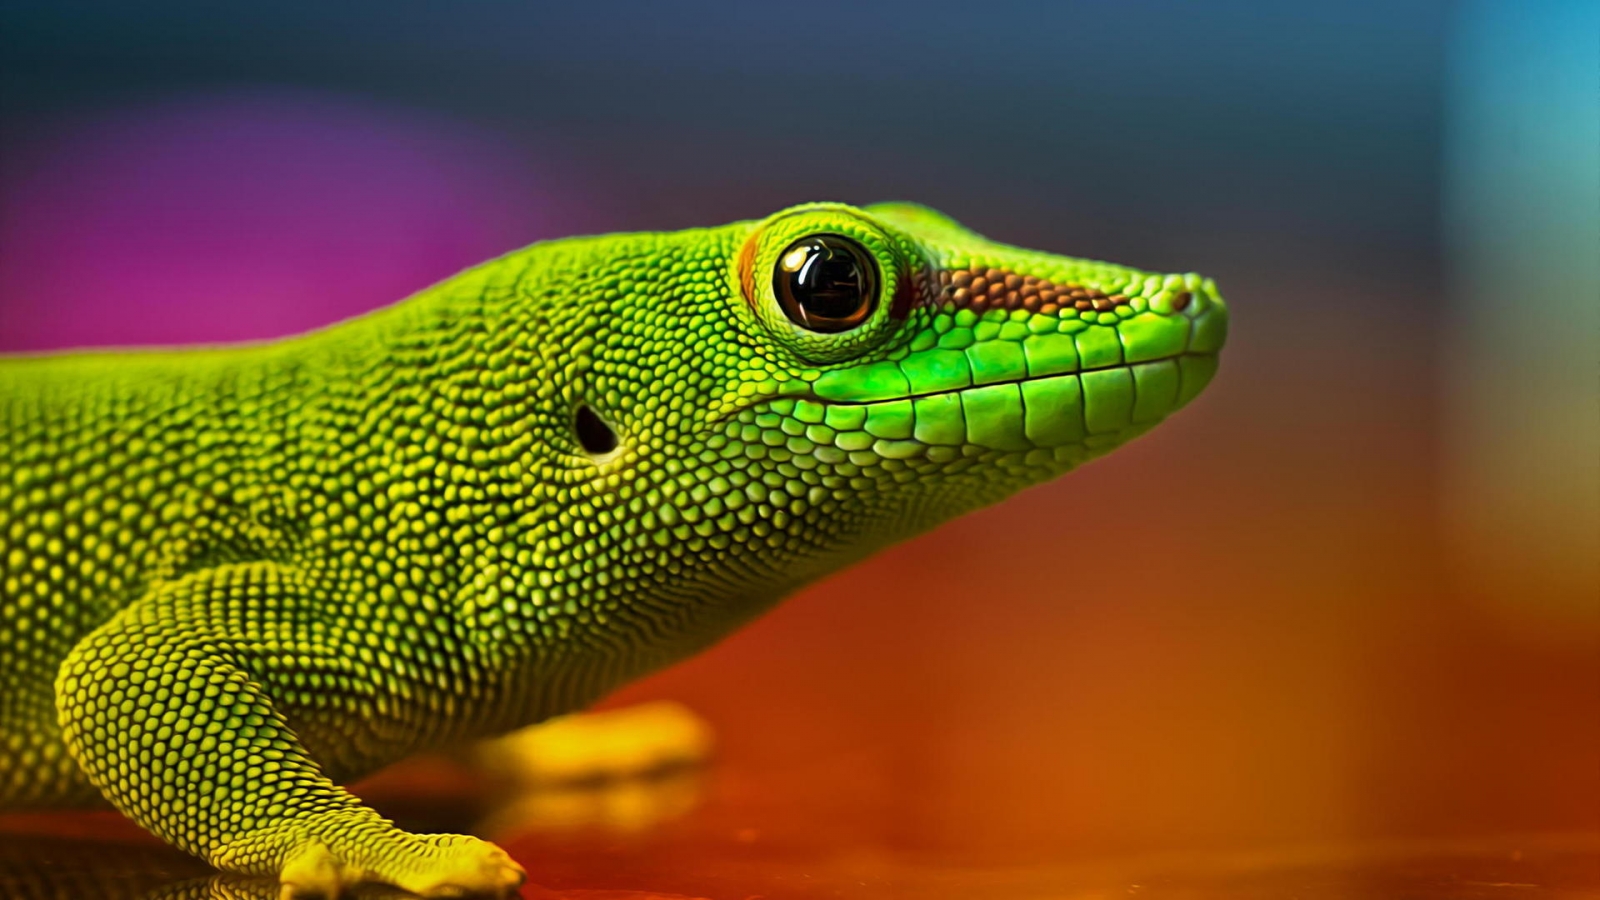 Green Lizard for 1600 x 900 HDTV resolution